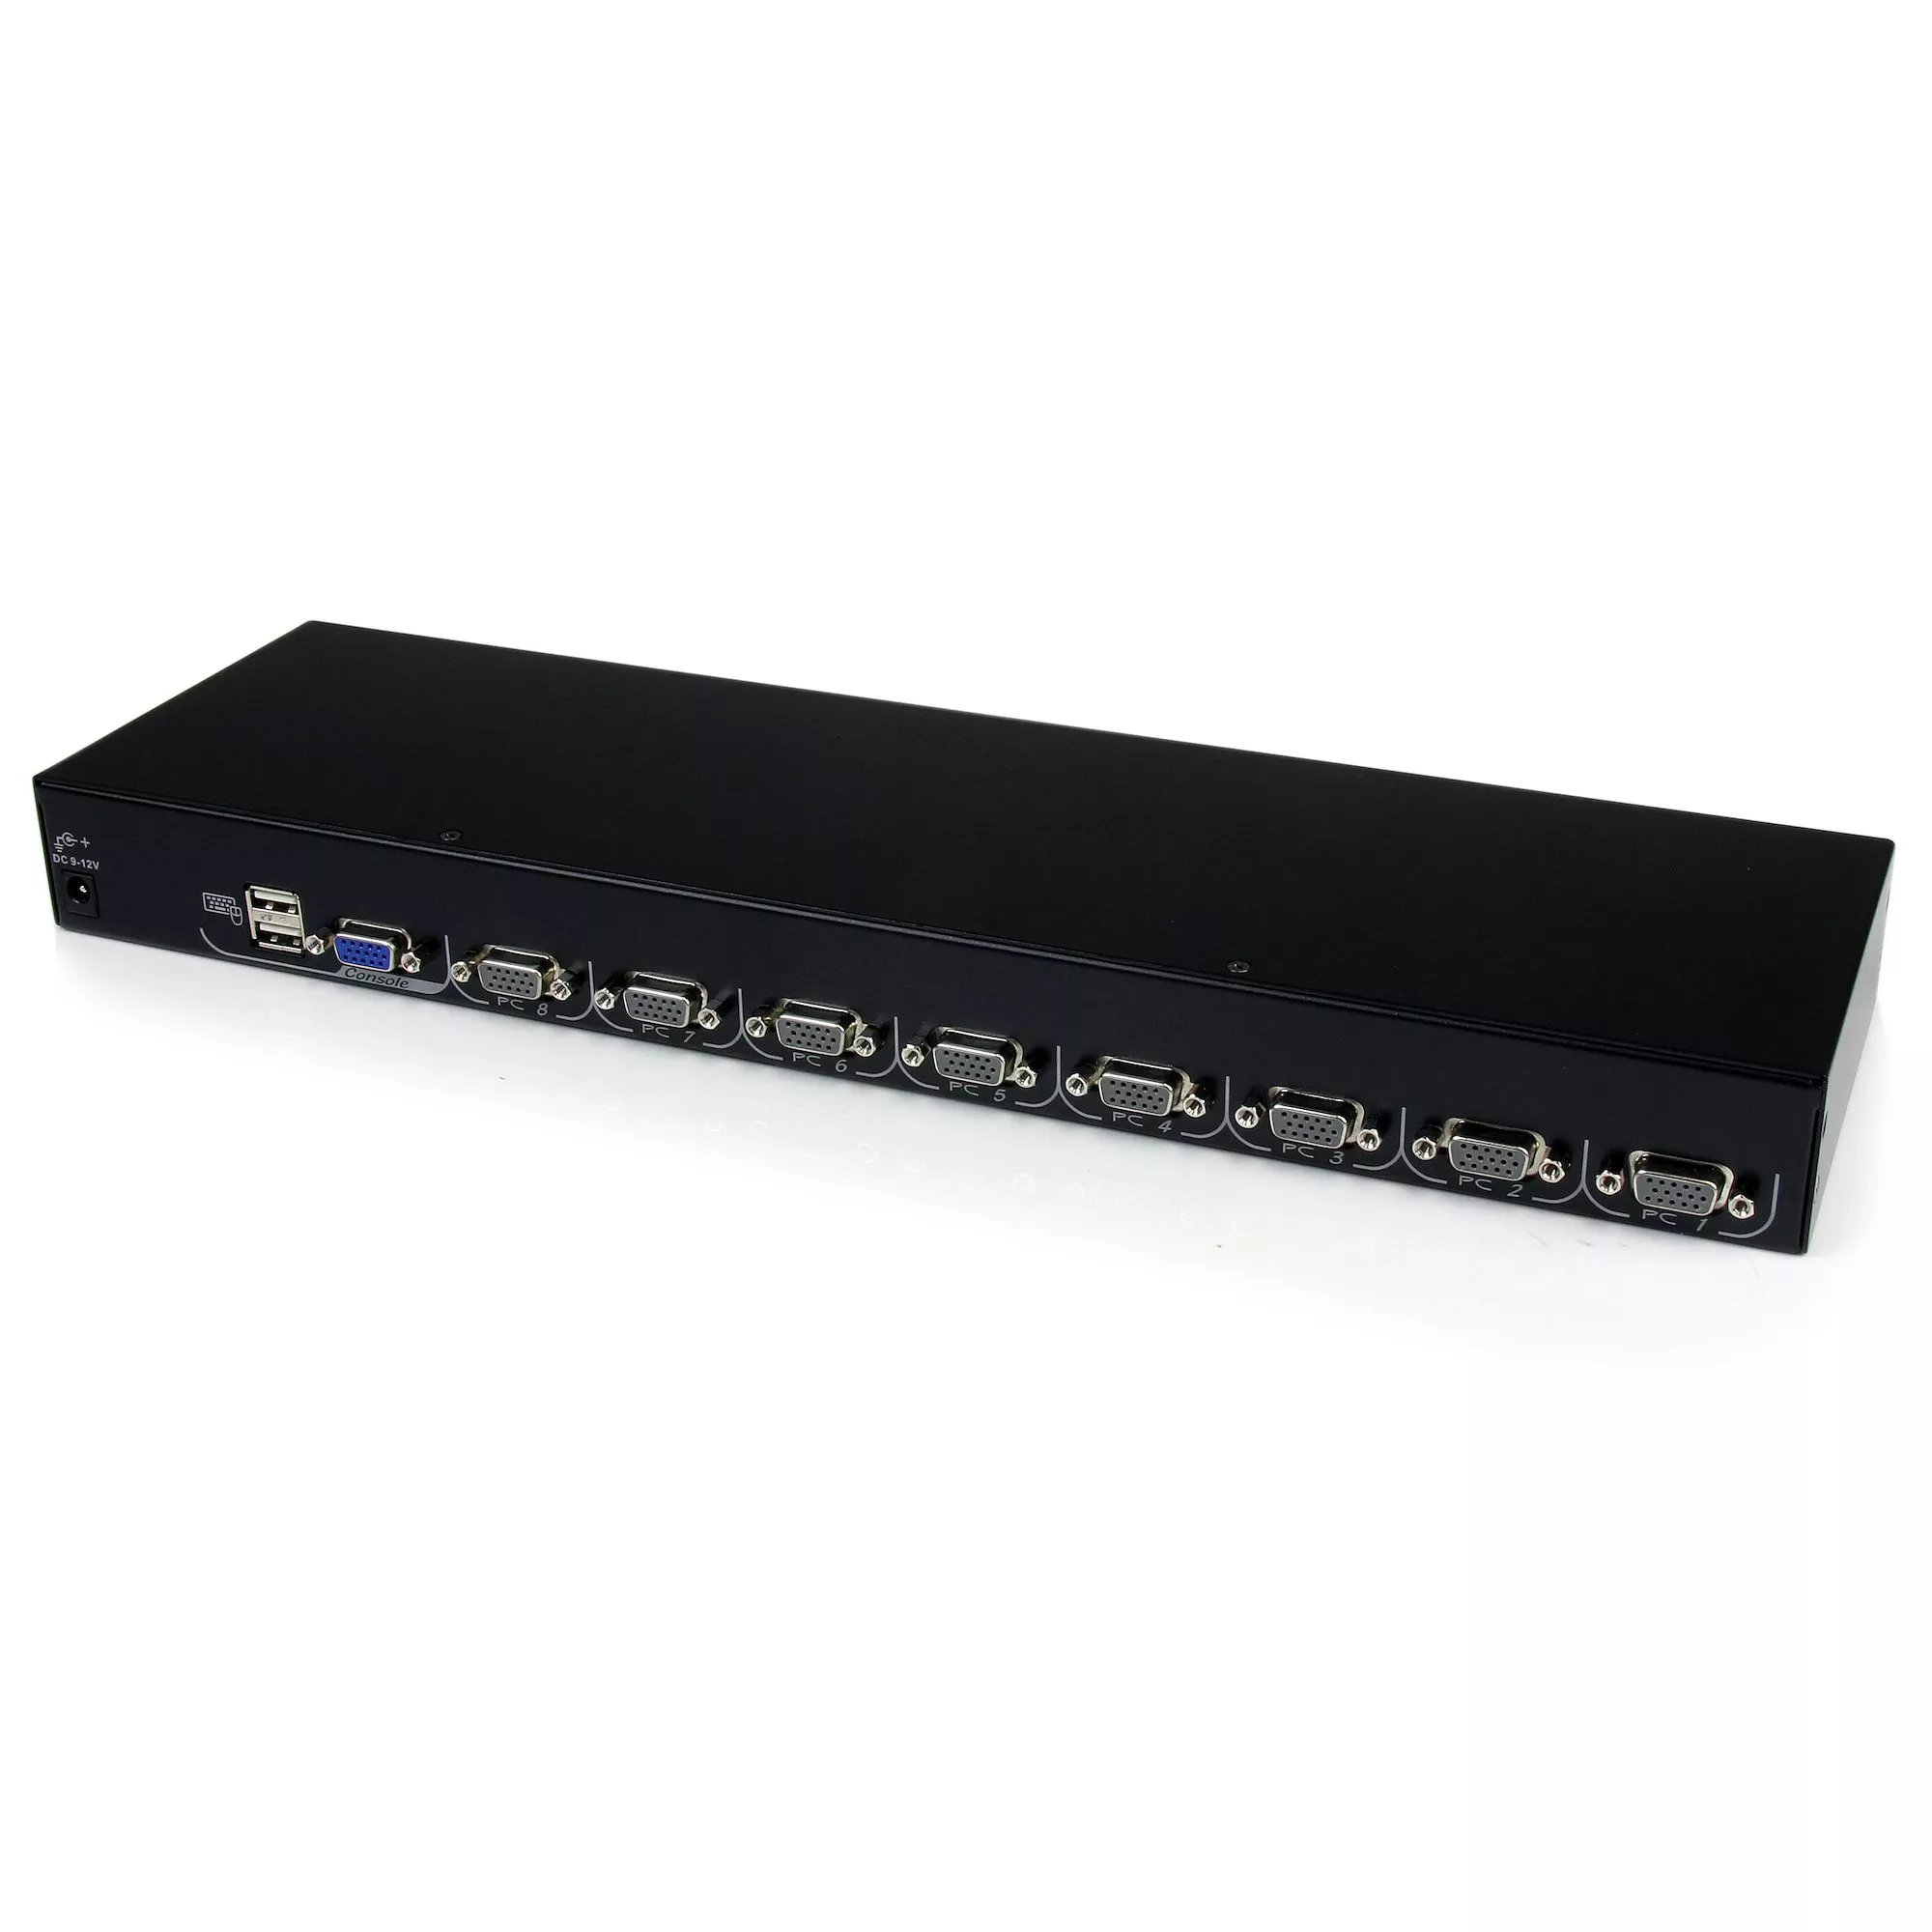 Revendeur officiel Switchs et Hubs StarTech.com Module de commutateur KVM USB 8 ports pour